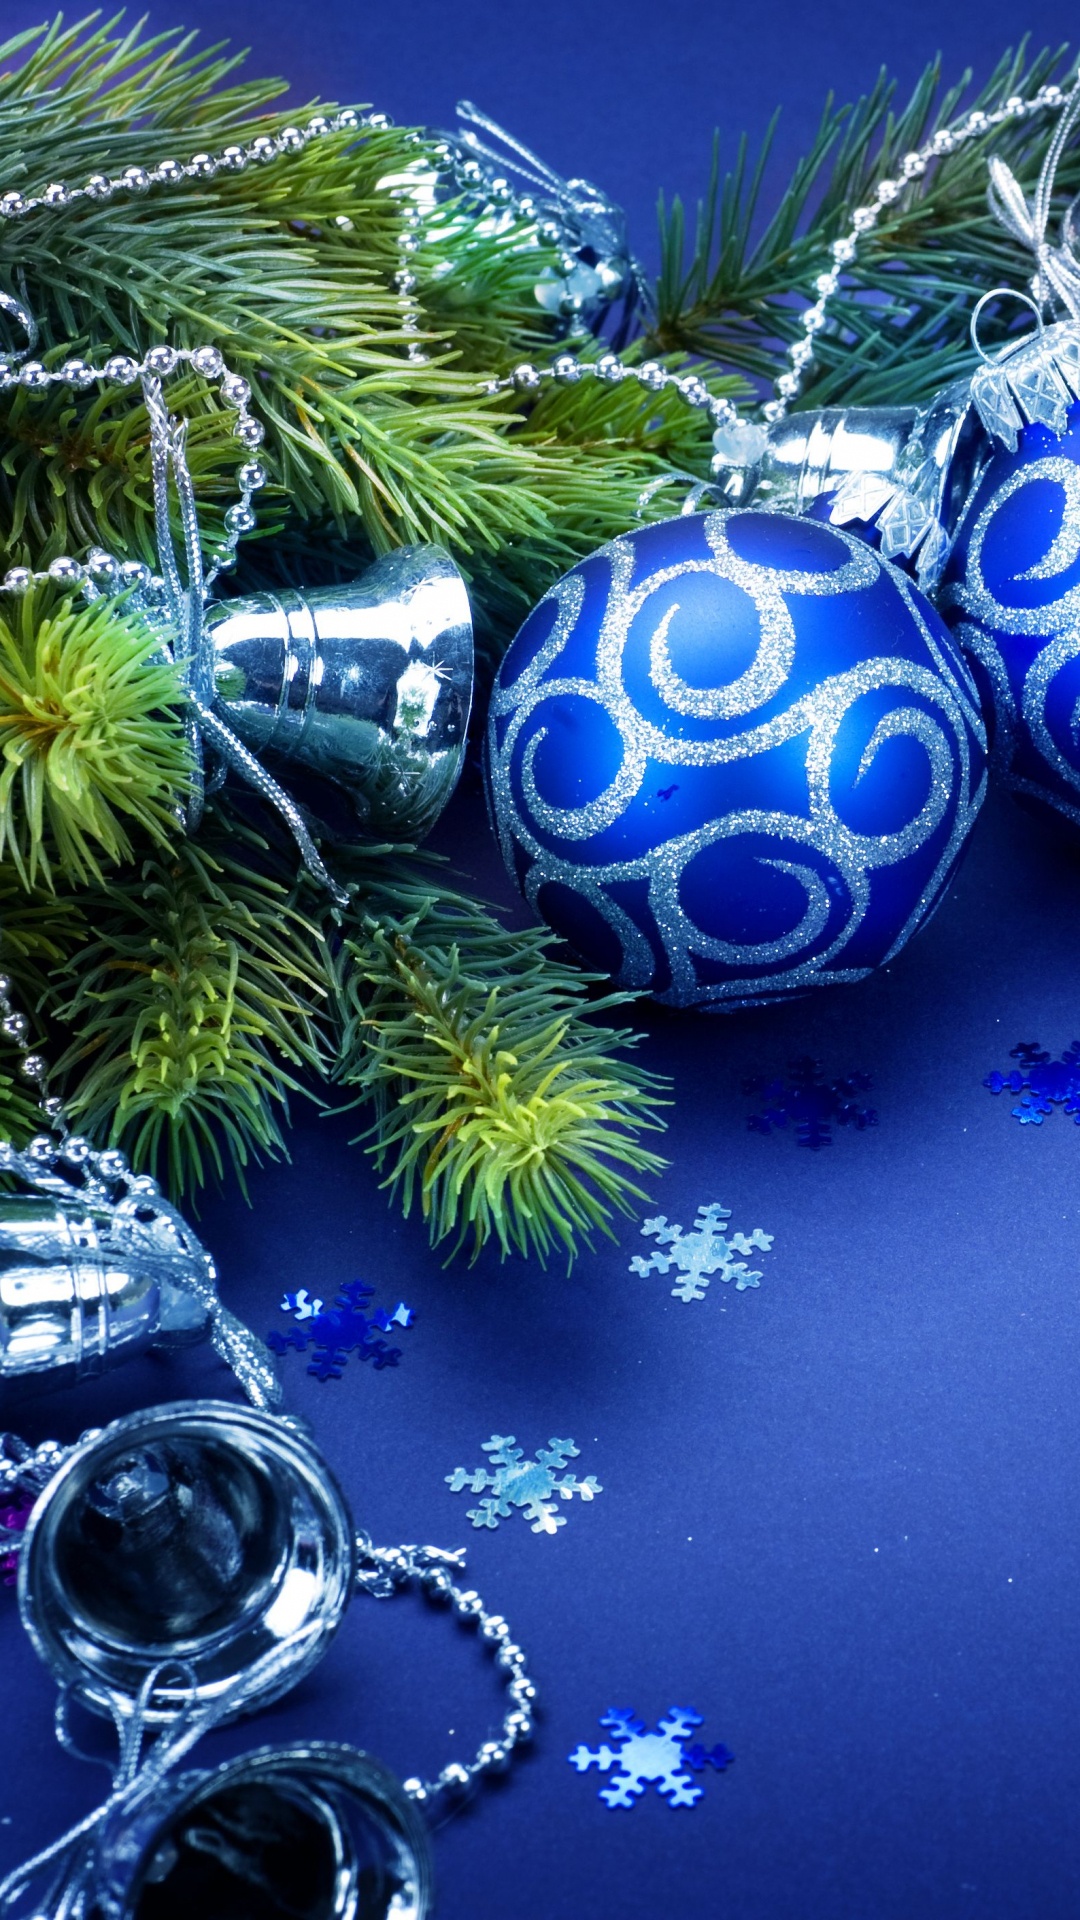 Le Jour De Noël, Ornement de Noël, Blue, Décoration de Noël, Arbre de Noël. Wallpaper in 1080x1920 Resolution